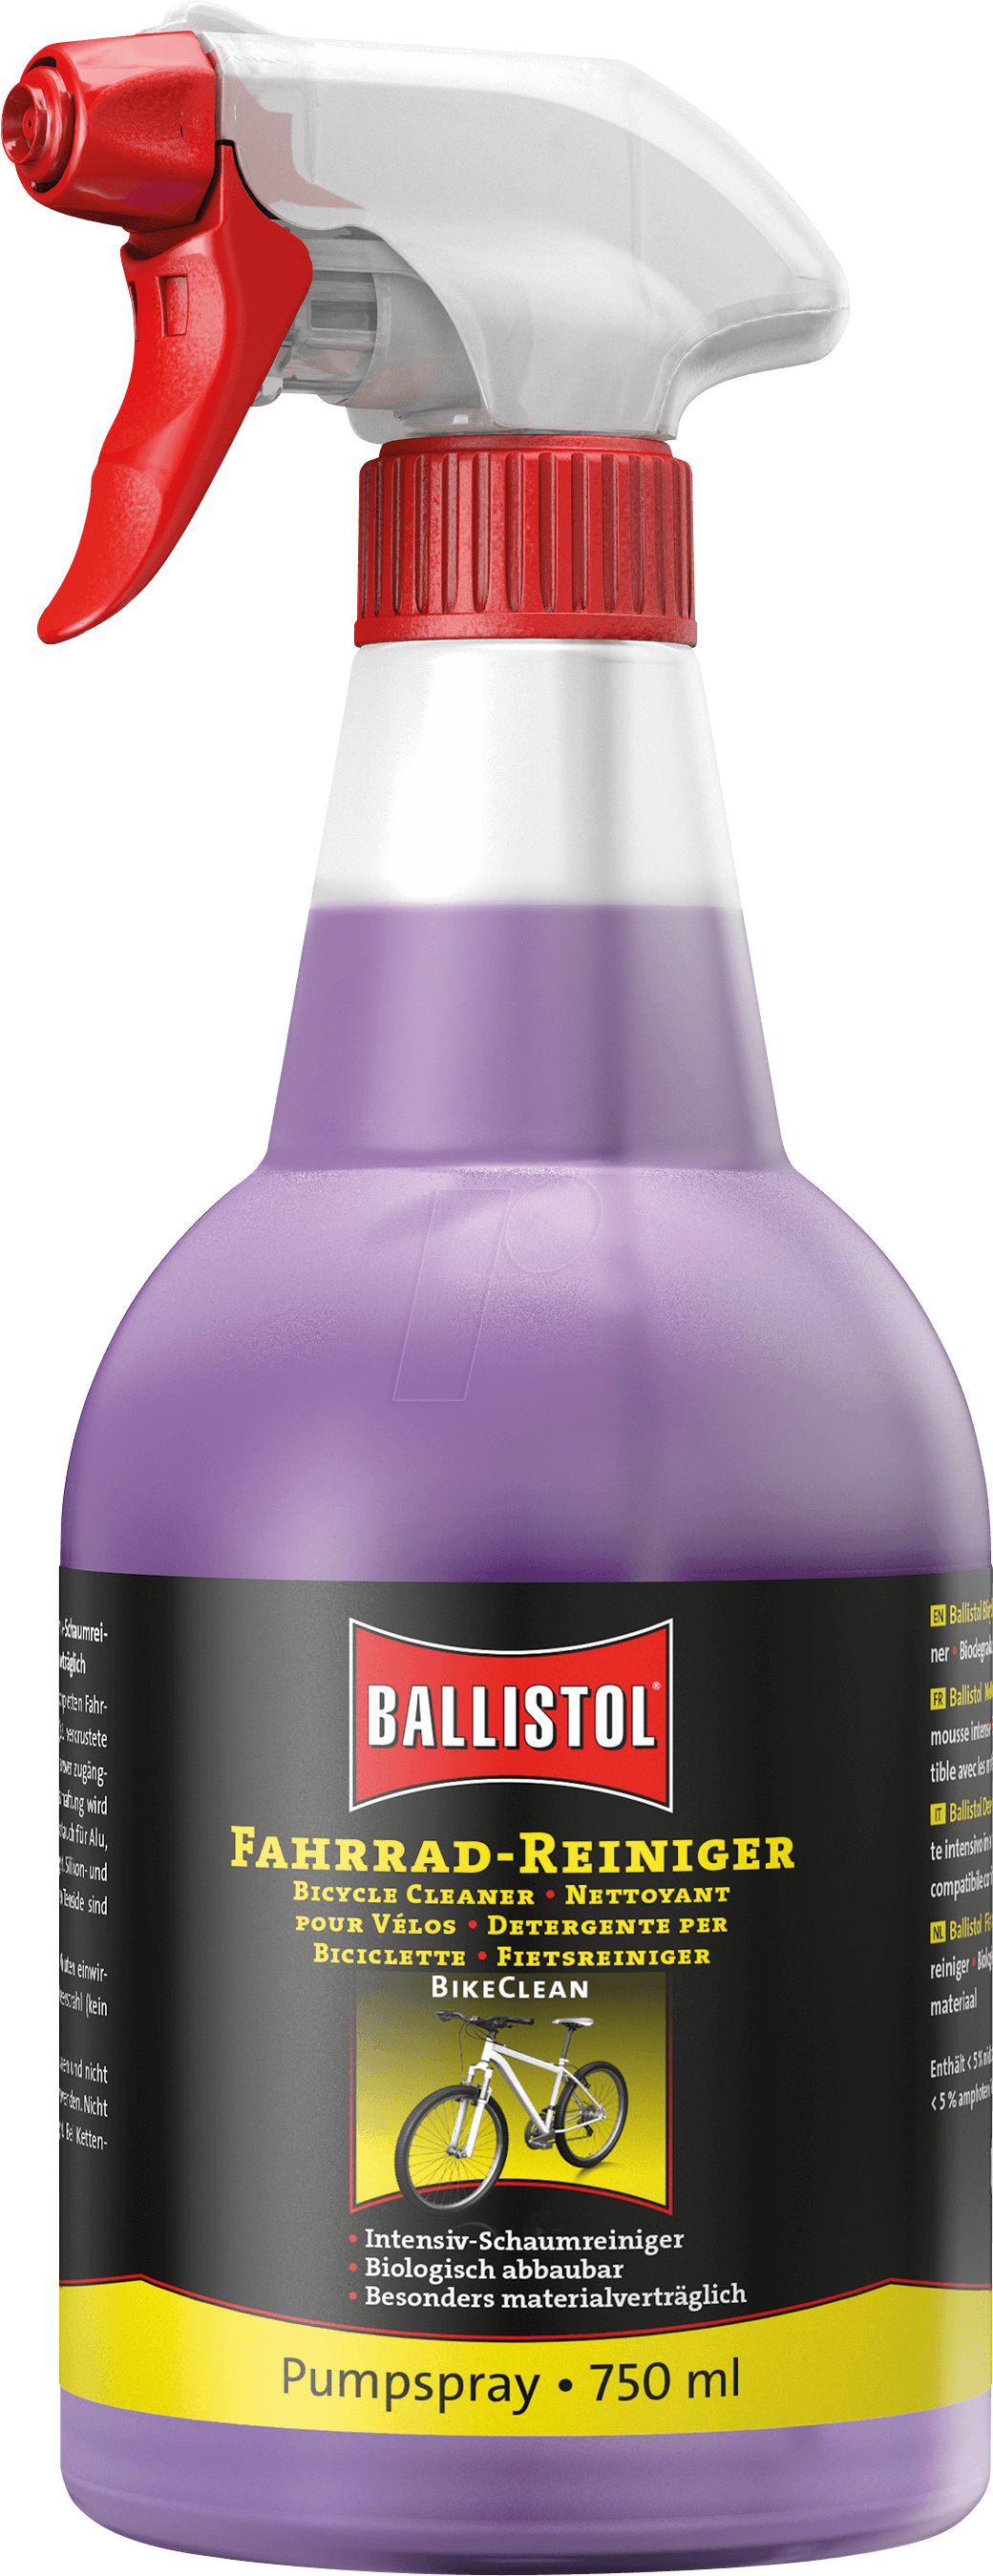 BALL 28160 - Fahrradreiniger BikeClean, 750 ml, Pumpspray von Ballistol